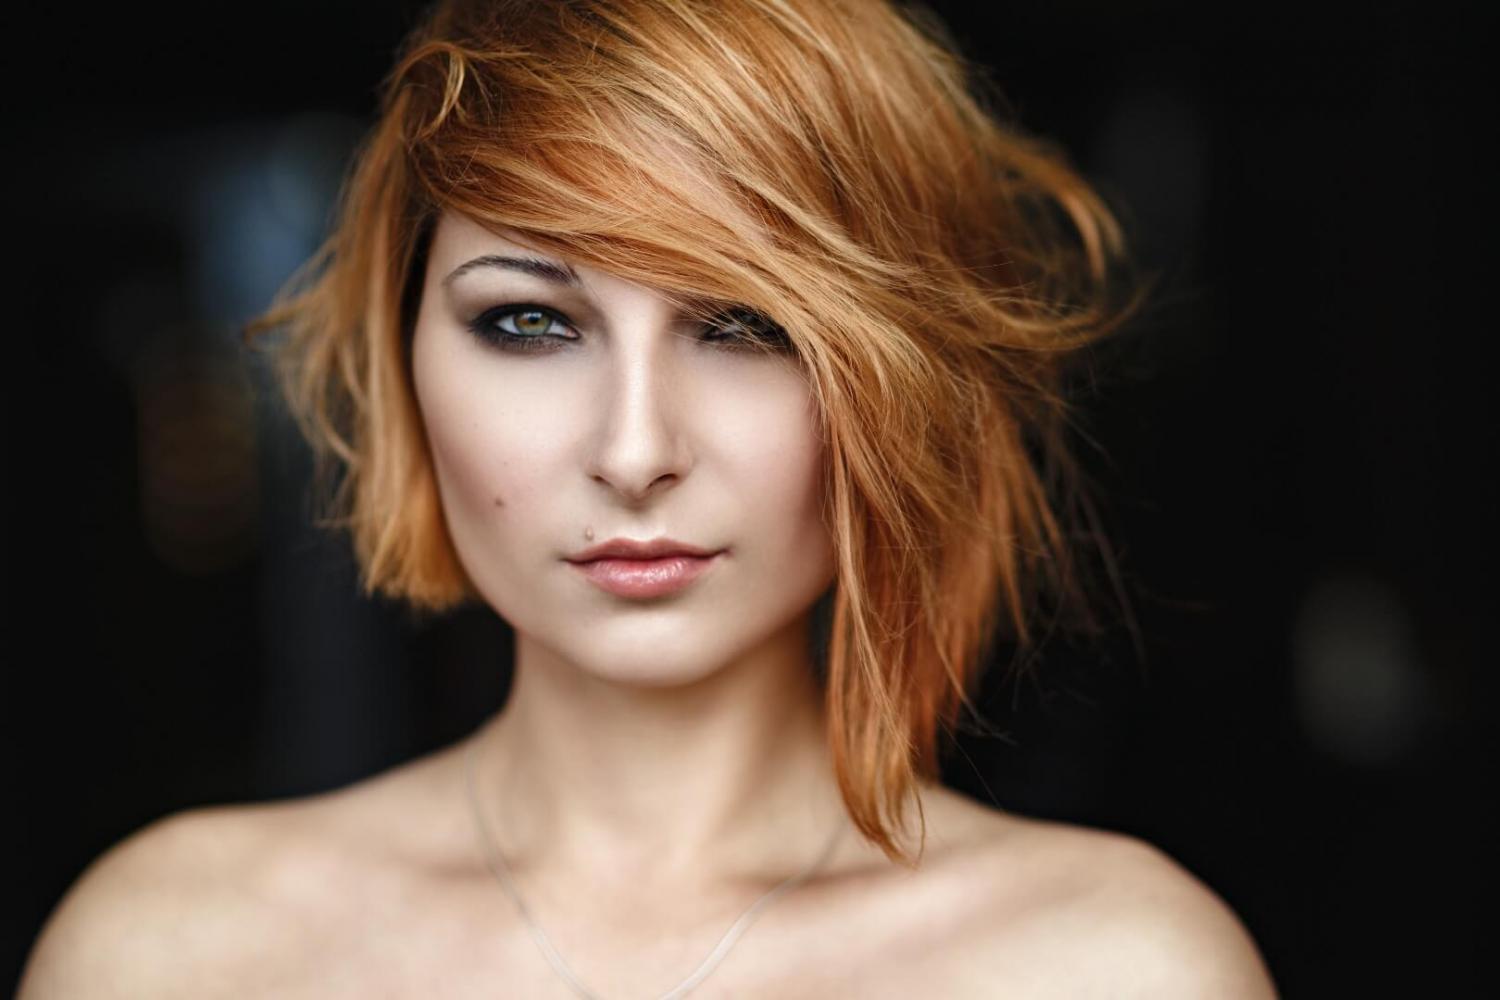 dizainvolos.ru дизайн волос - женская модельная креативная стрижка на средние волосы, ассиметричное каре, рыжий цвет волос